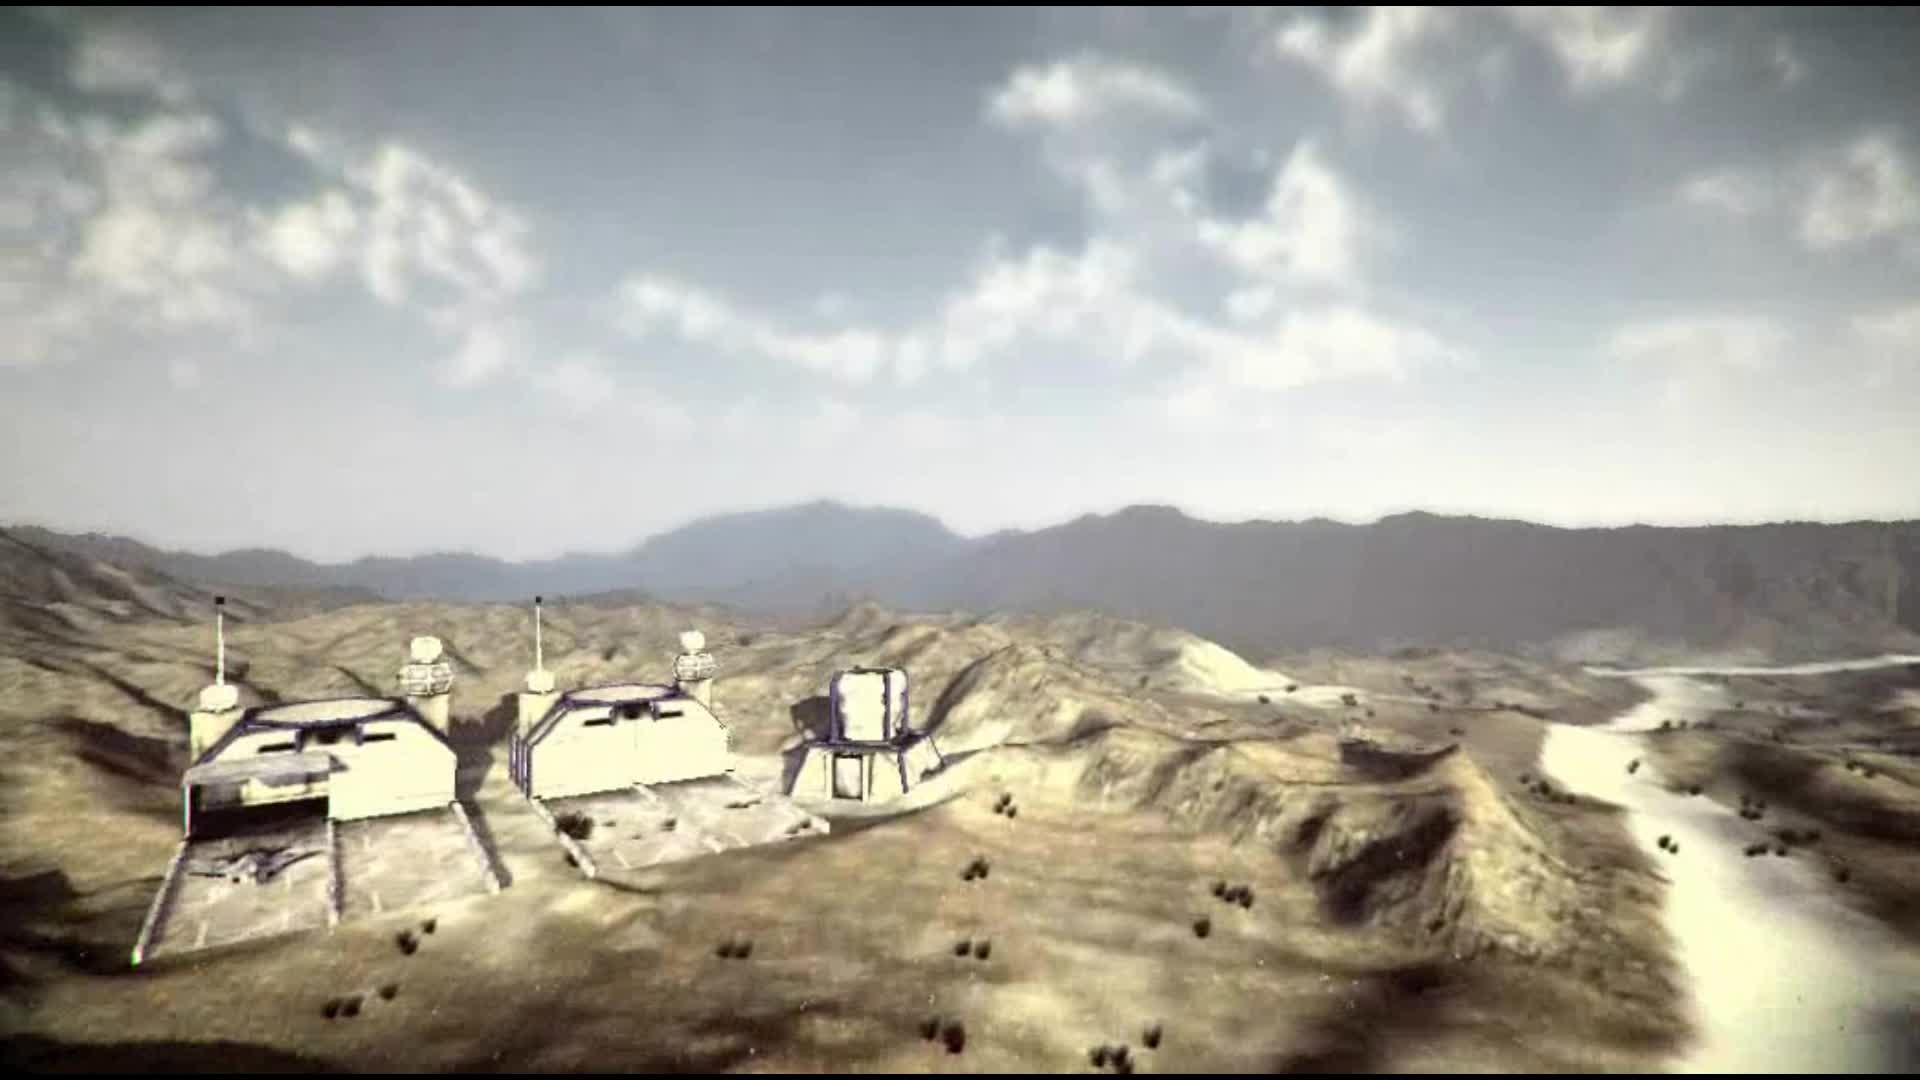 Unity3D video - Command & Conquer: Generals 2 mod for C&C: Generals ...